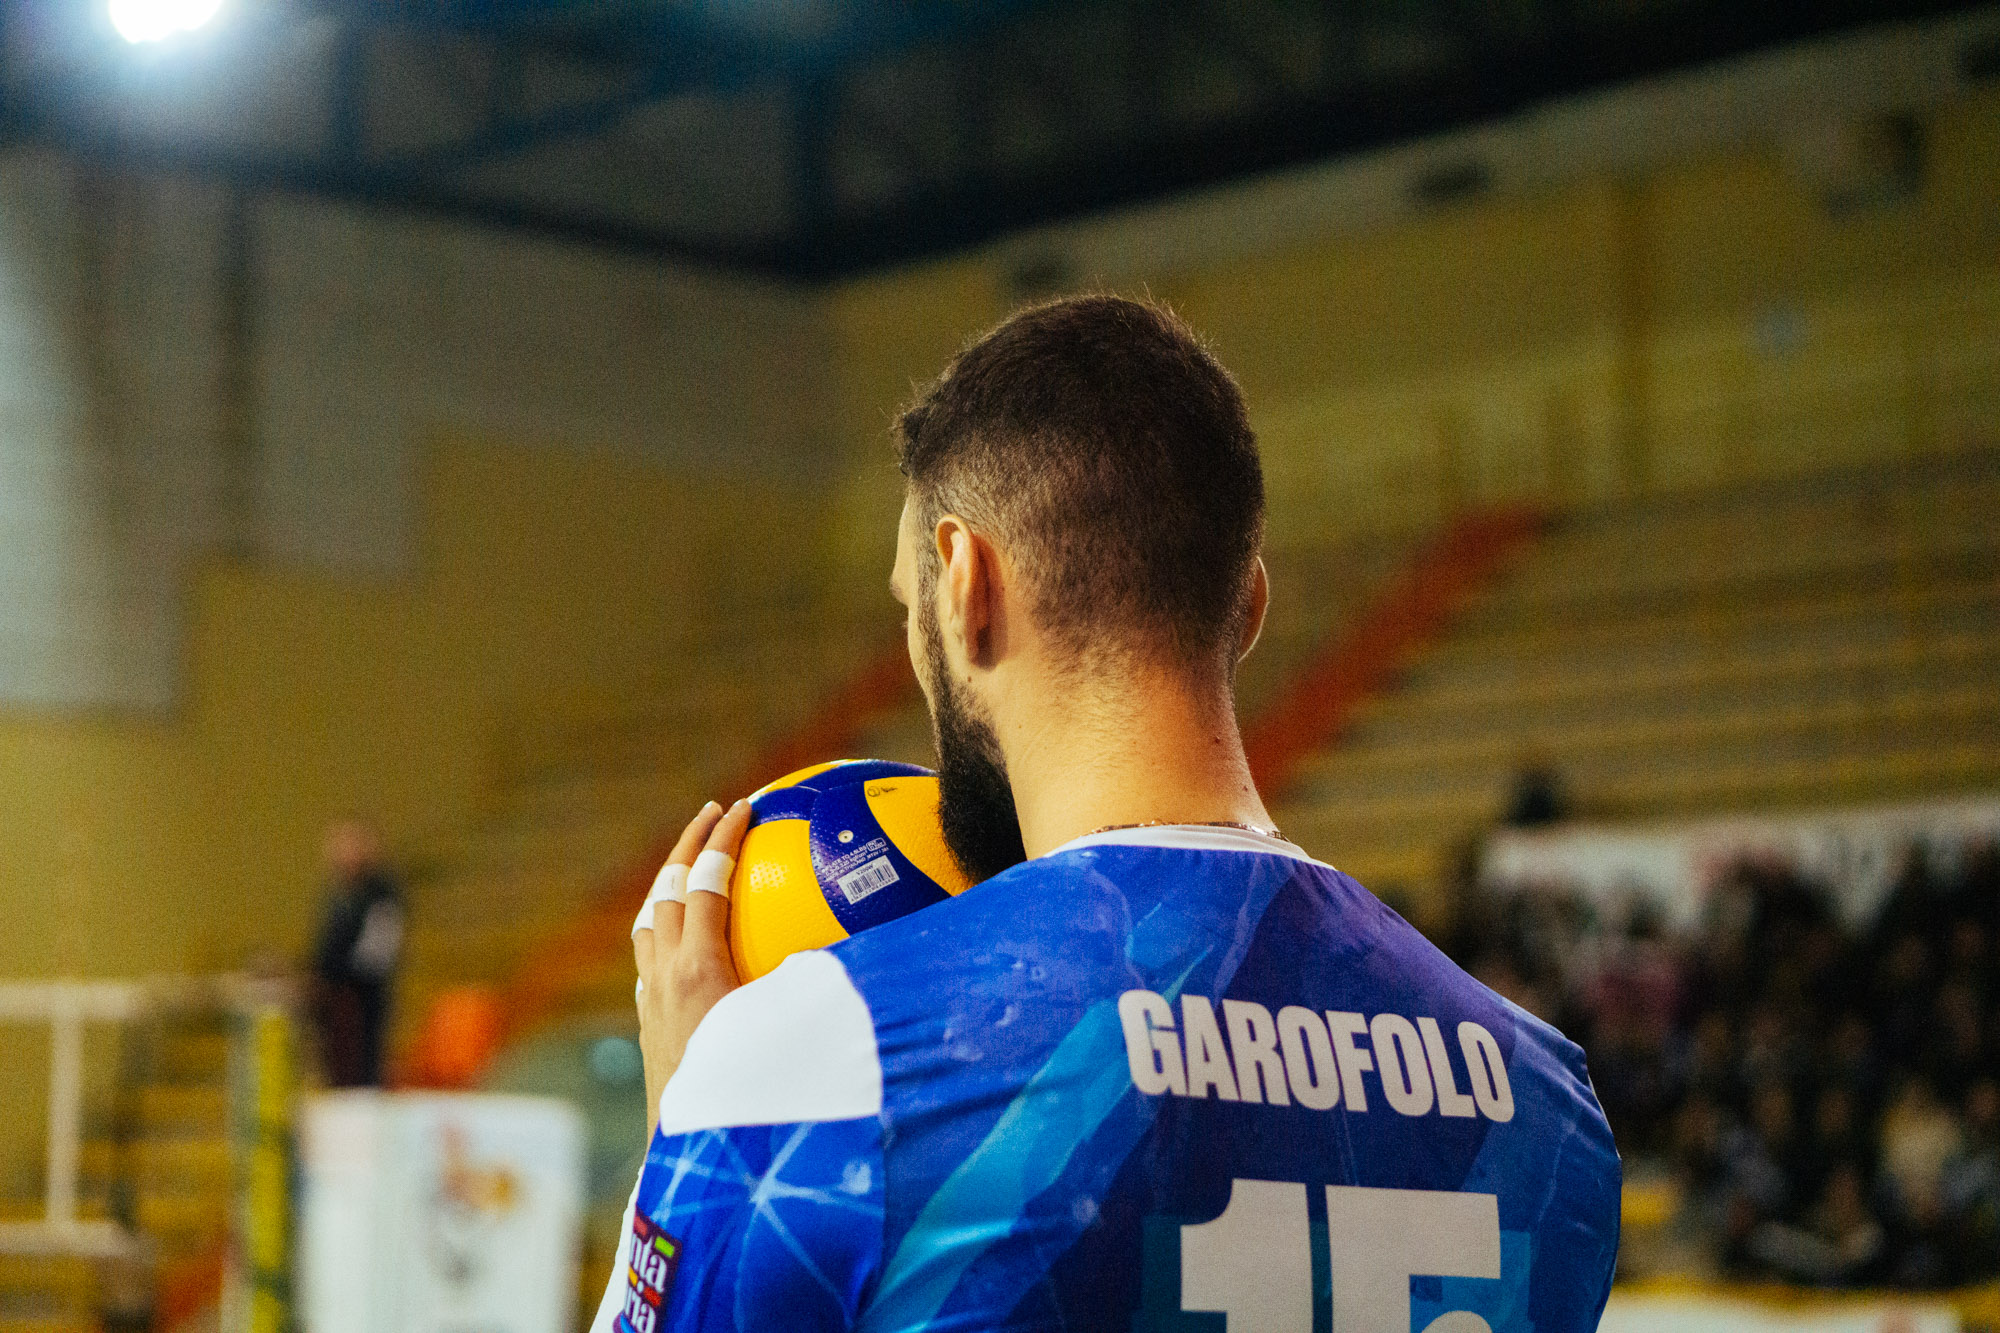 La Volley Modica prepara la sfida del “PalaRizza” contro Bari, Garofolo: obiettivo play off